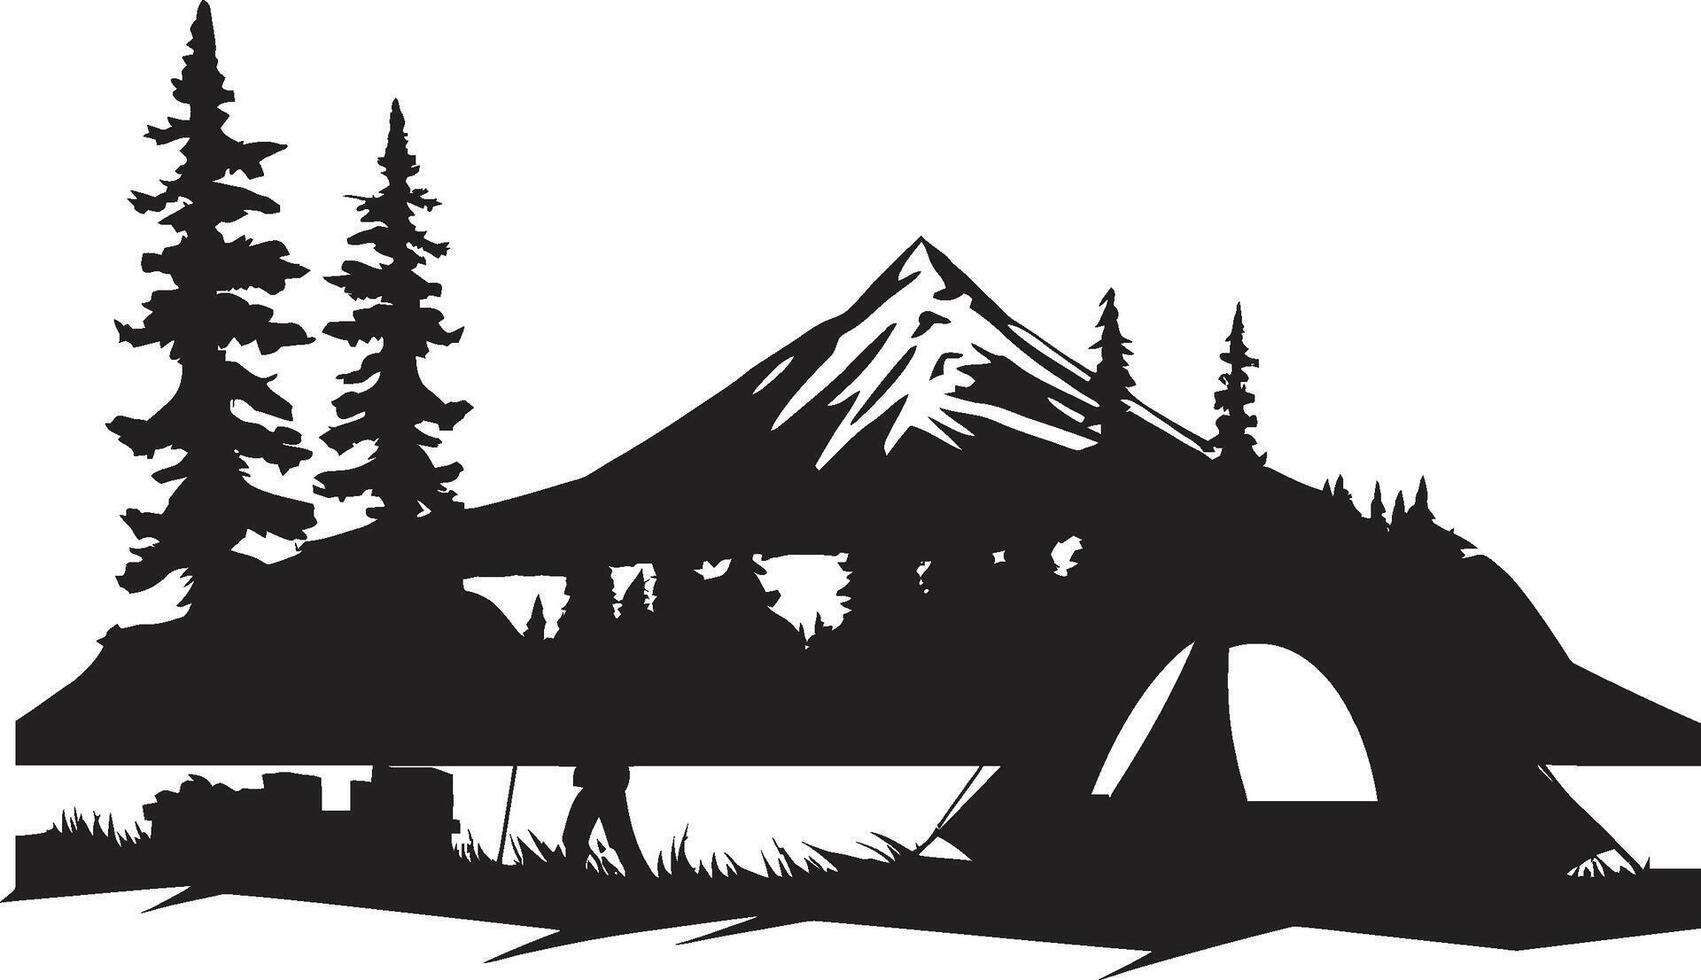 avventura attende monocromatico emblema per all'aperto esplorazione nature sinfonia elegante campeggio logo design nel nero vettore